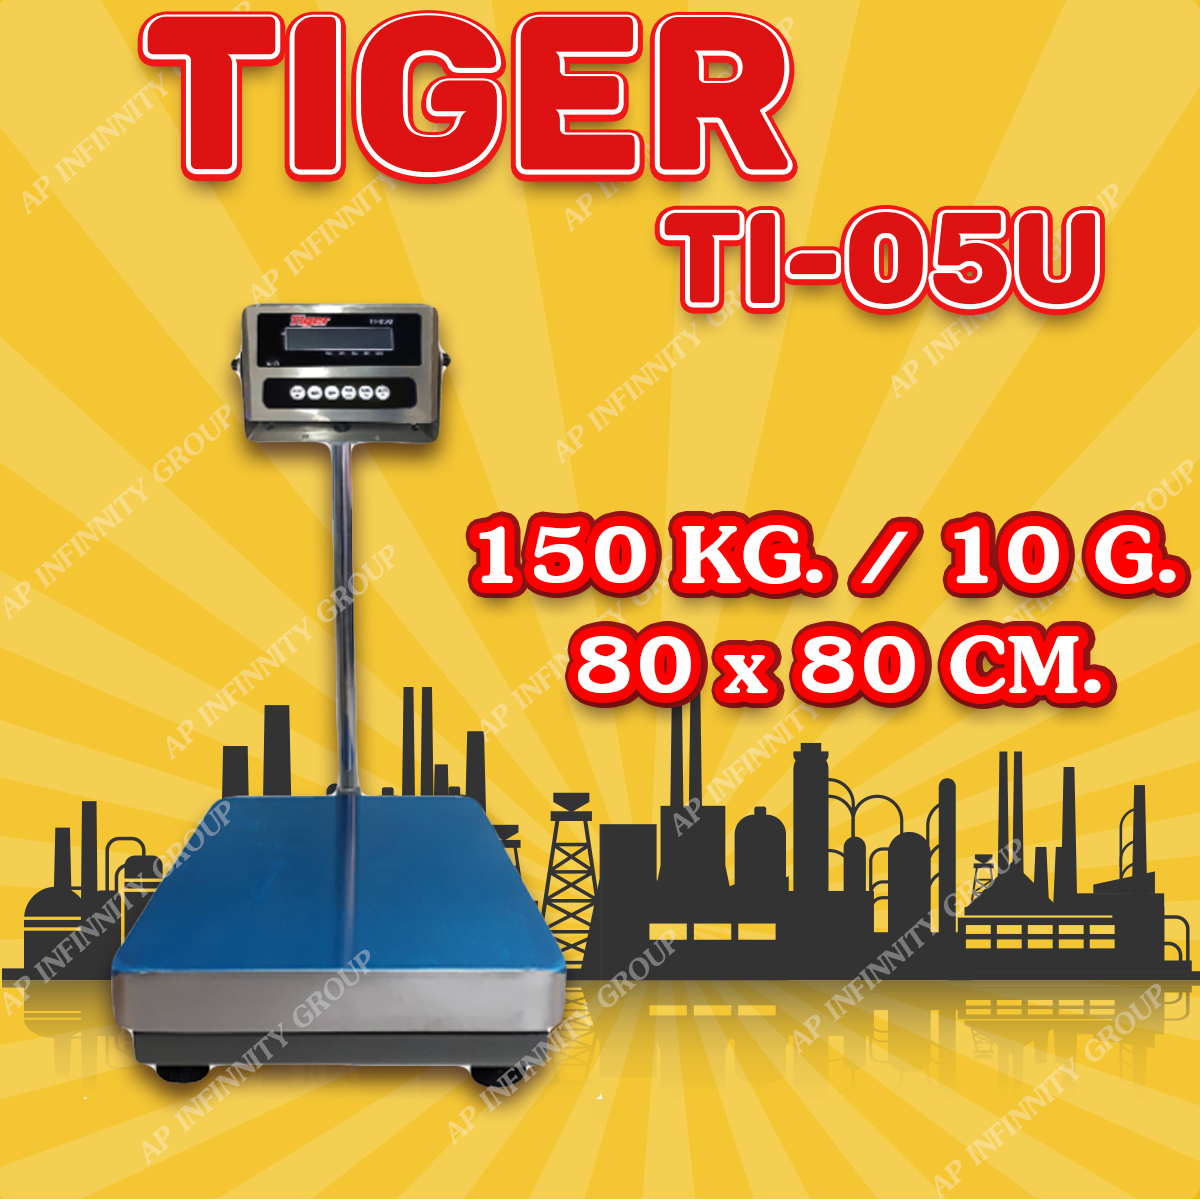 ตาชั่งดิจิตอล เครื่องชั่งดิจิตอล เครื่องชั่งตั้งพื้น 150kg ความละเอียด 10g ยี่ห้อ Tiger รุ่น TI–05U แท่นชั่งขนาดฐาน 80x80cm มีช่อง USB สำหรับการบันทึกข้อมูลได้ รูปที่ 1